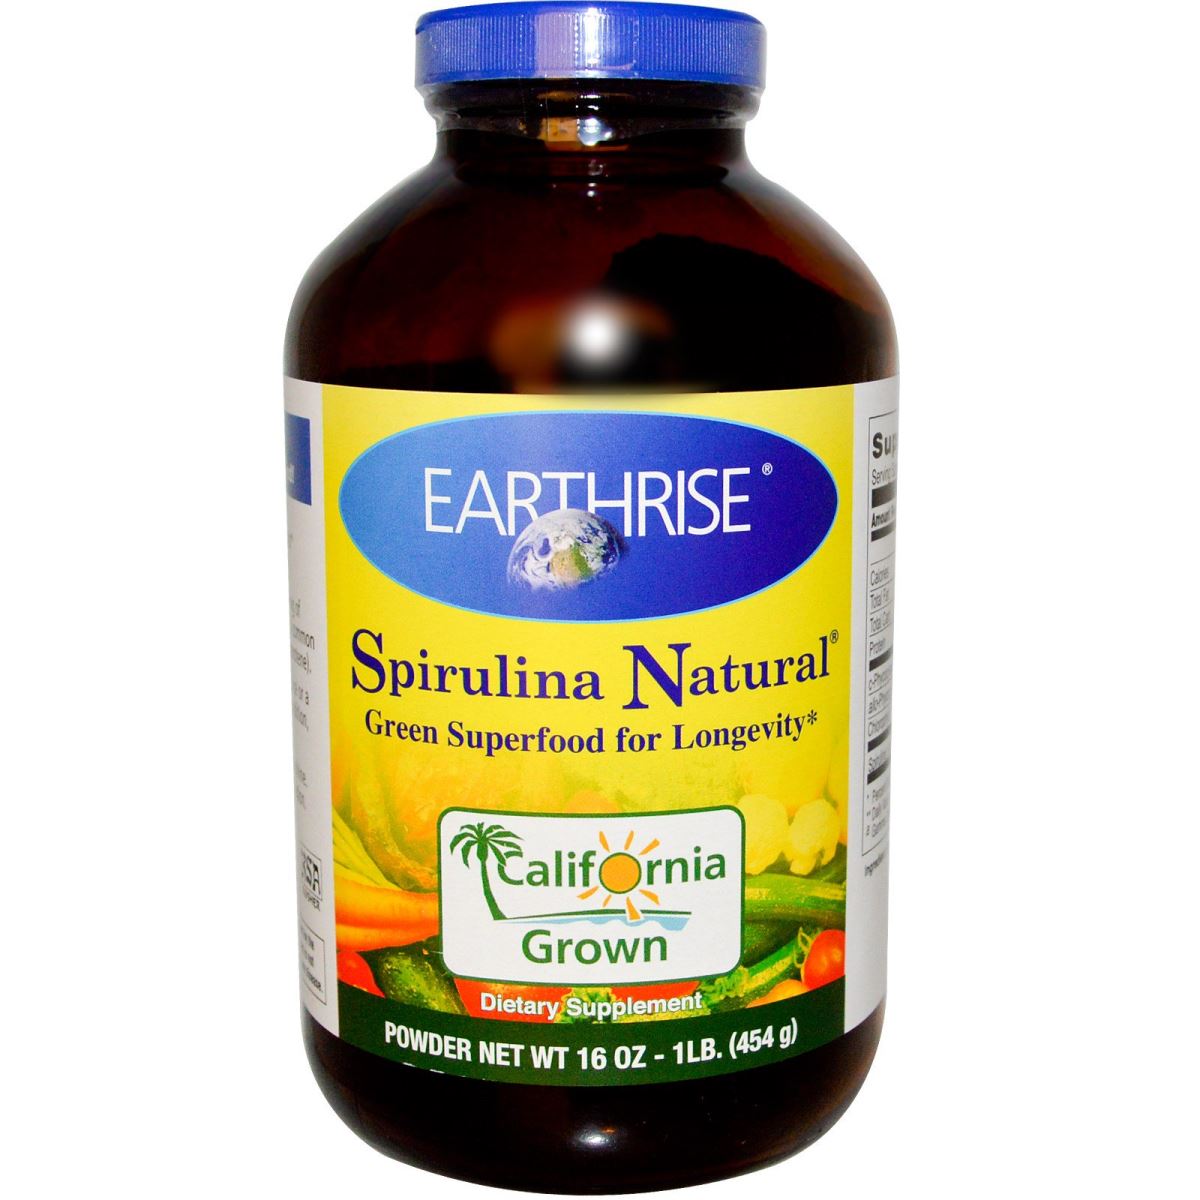 Earthrise Spirulina Natural  Powder - giải pháp tăng cân cho người gầy